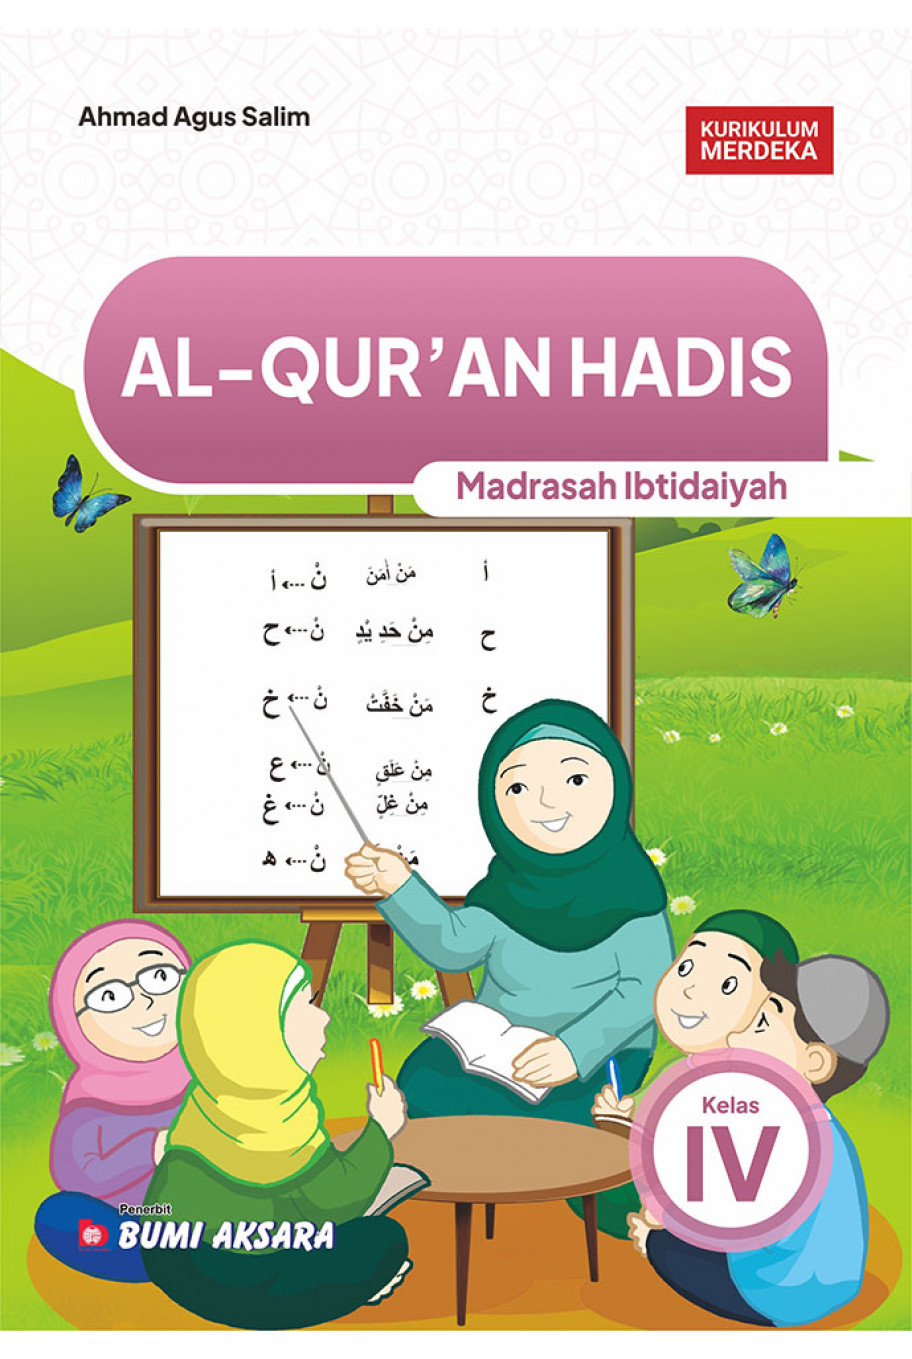 Al-Qur’an Hadis Madrasah Ibtidaiyah Kelas IV